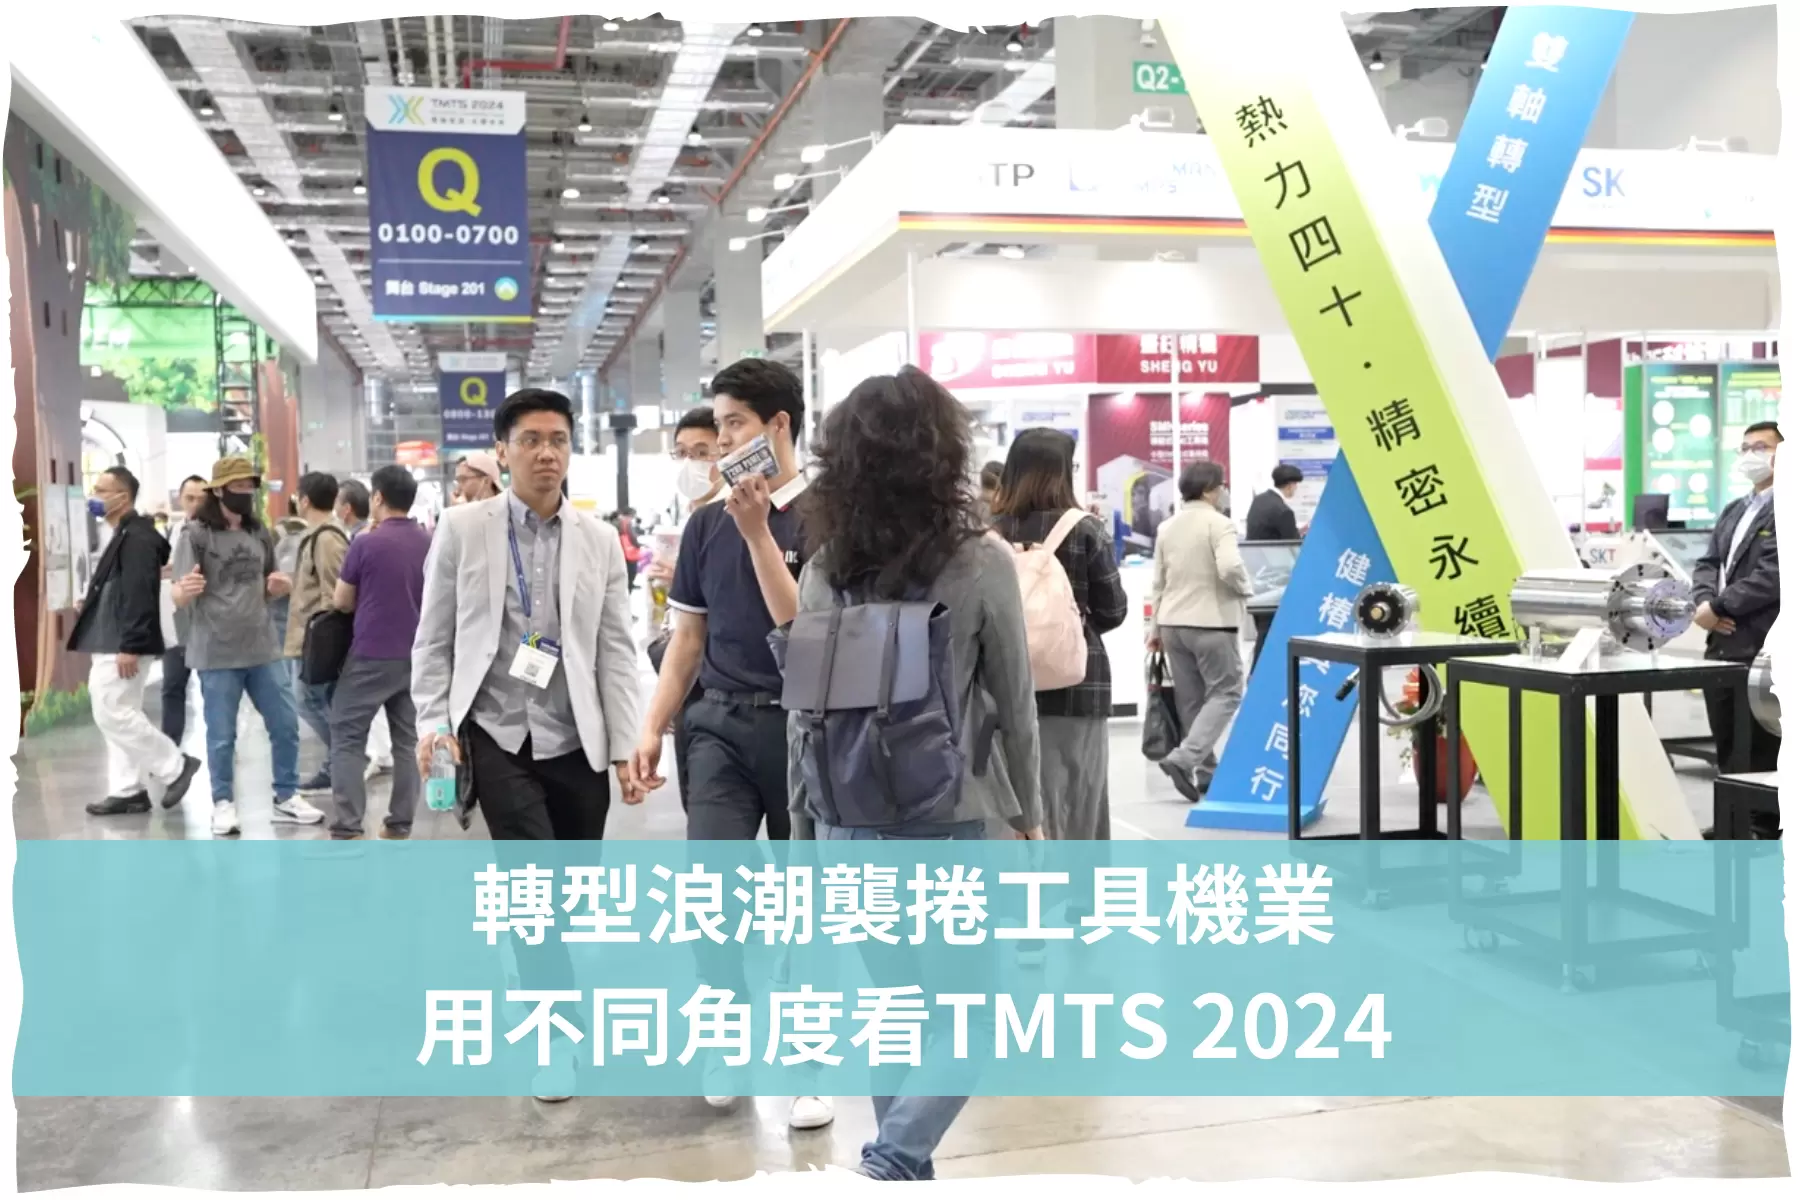 轉型浪潮襲捲工具機業，用不同角度看TMTS 2024